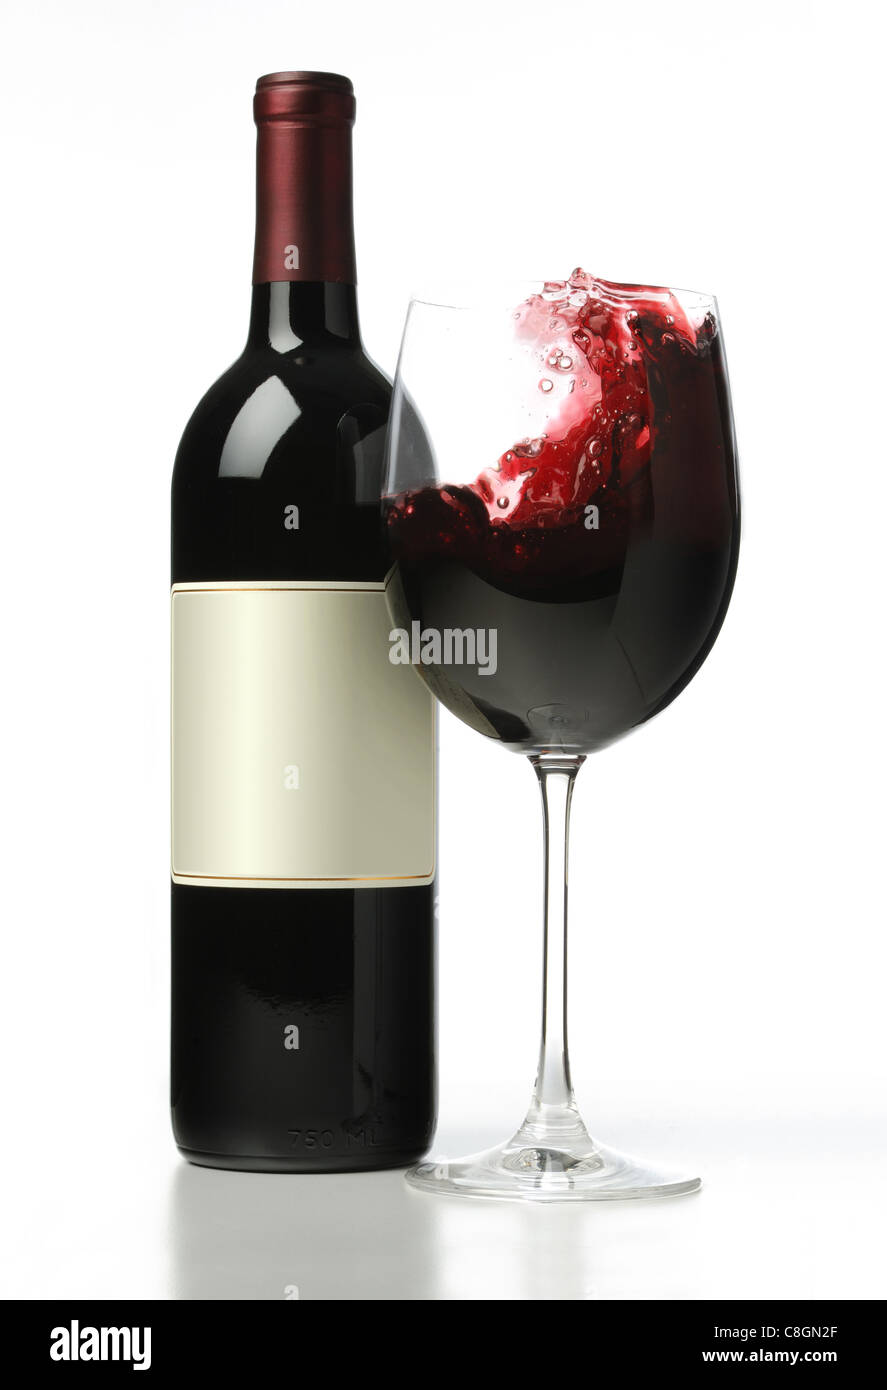 Eine Flasche Rotwein mit einem Glas Rotwein Plantschen im Inneren des Glases. Stockfoto